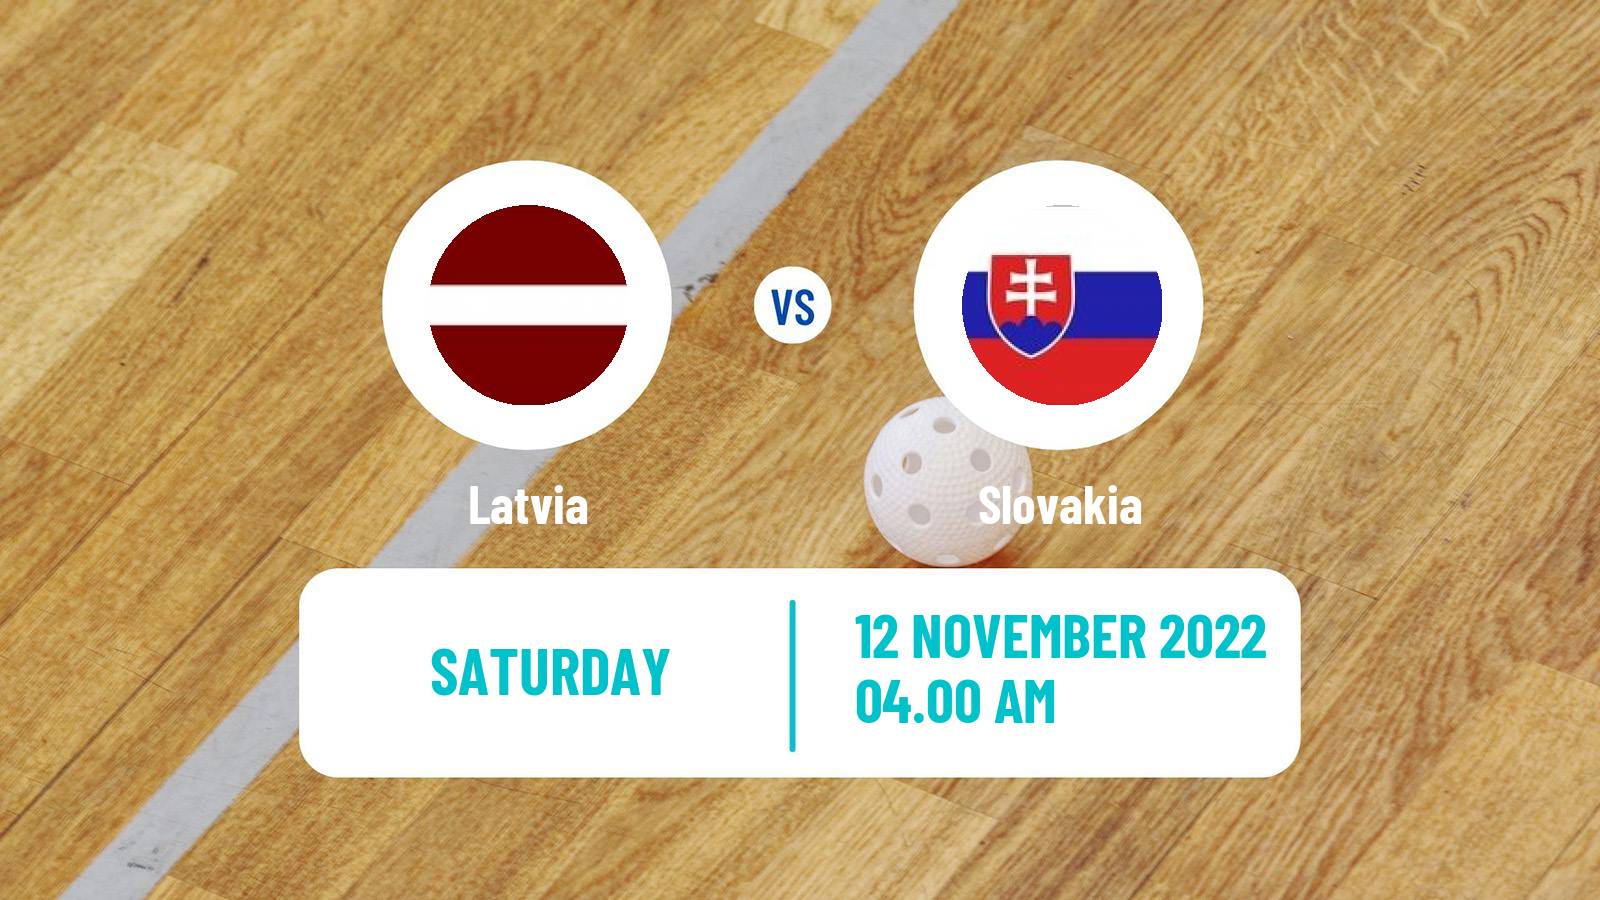 Floorball World Championship Floorball Latvia - Slovakia